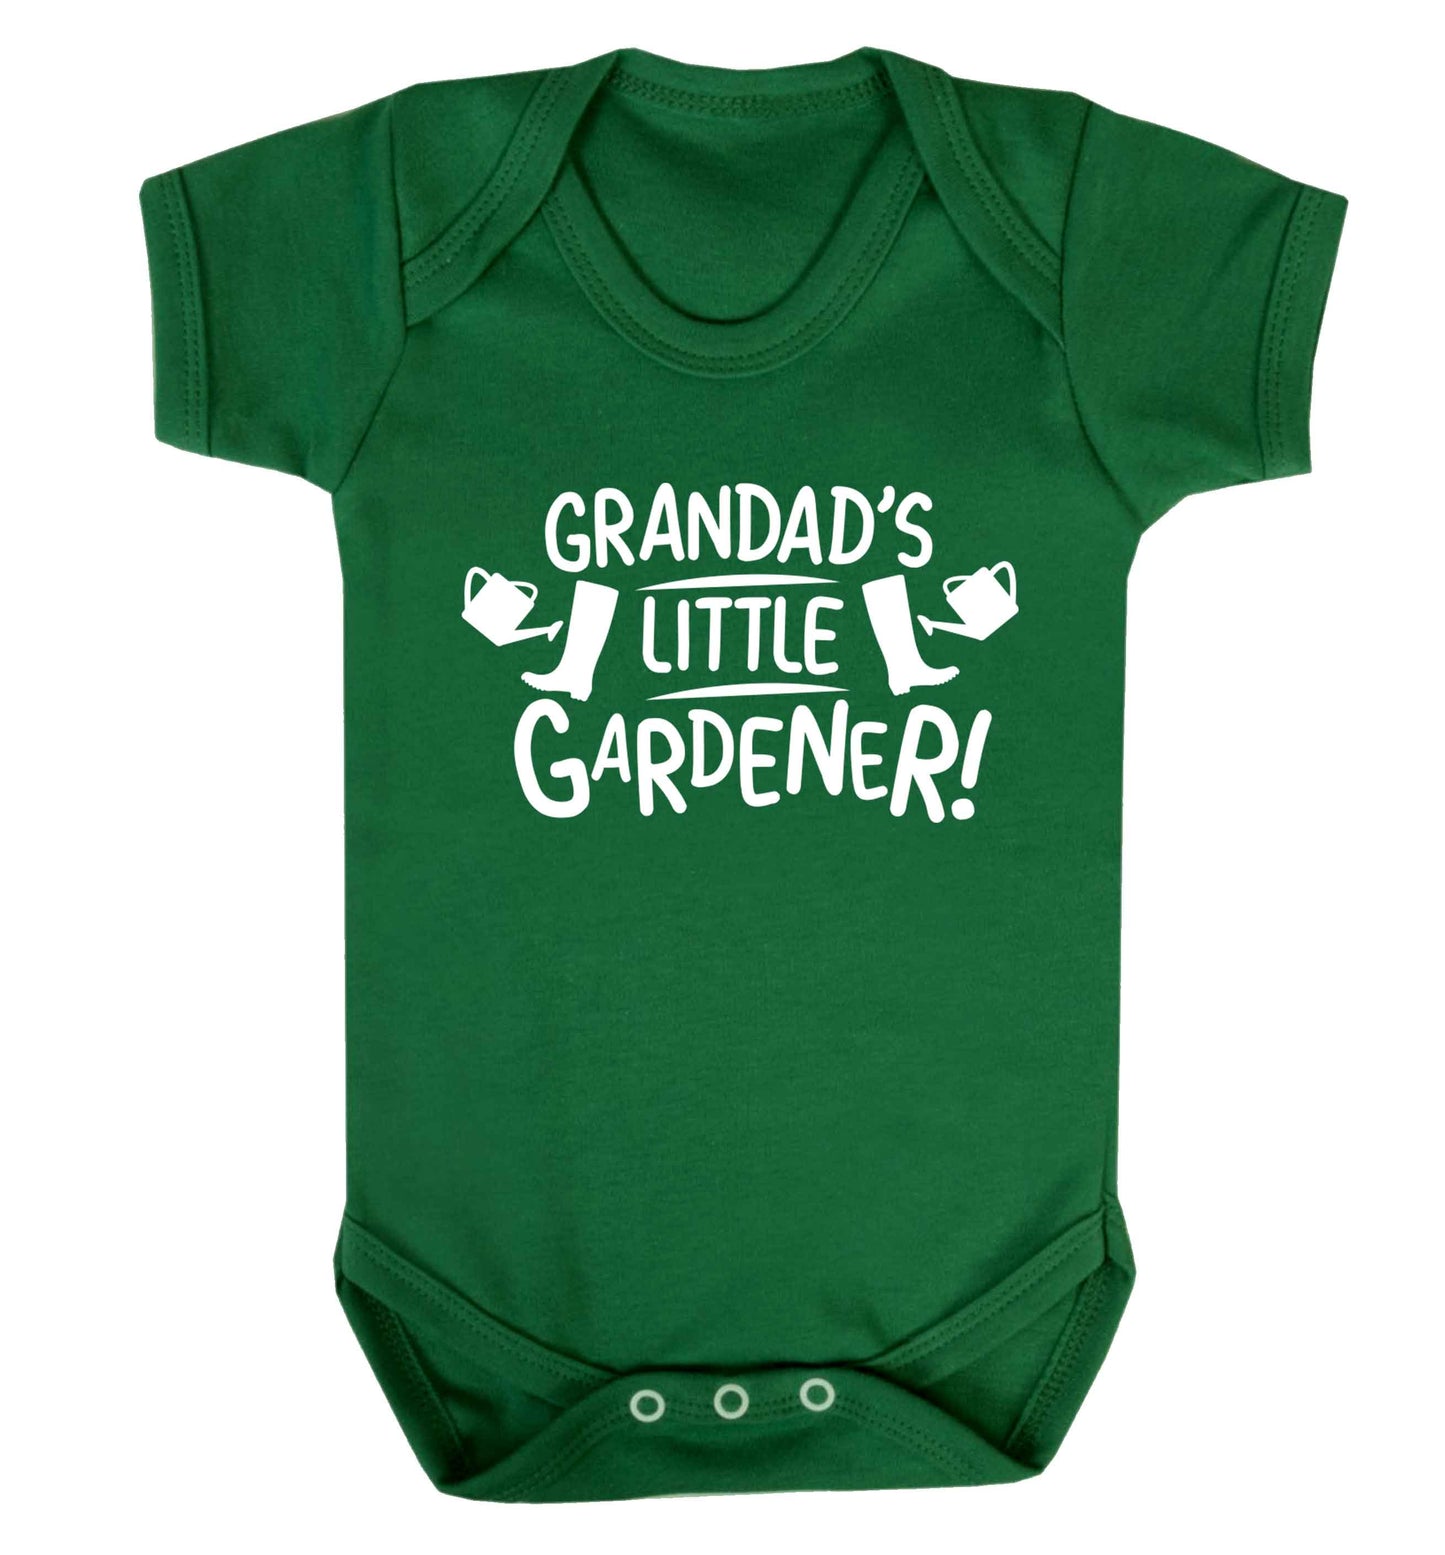 Grandad's little gardener Baby Vest green 18-24 months